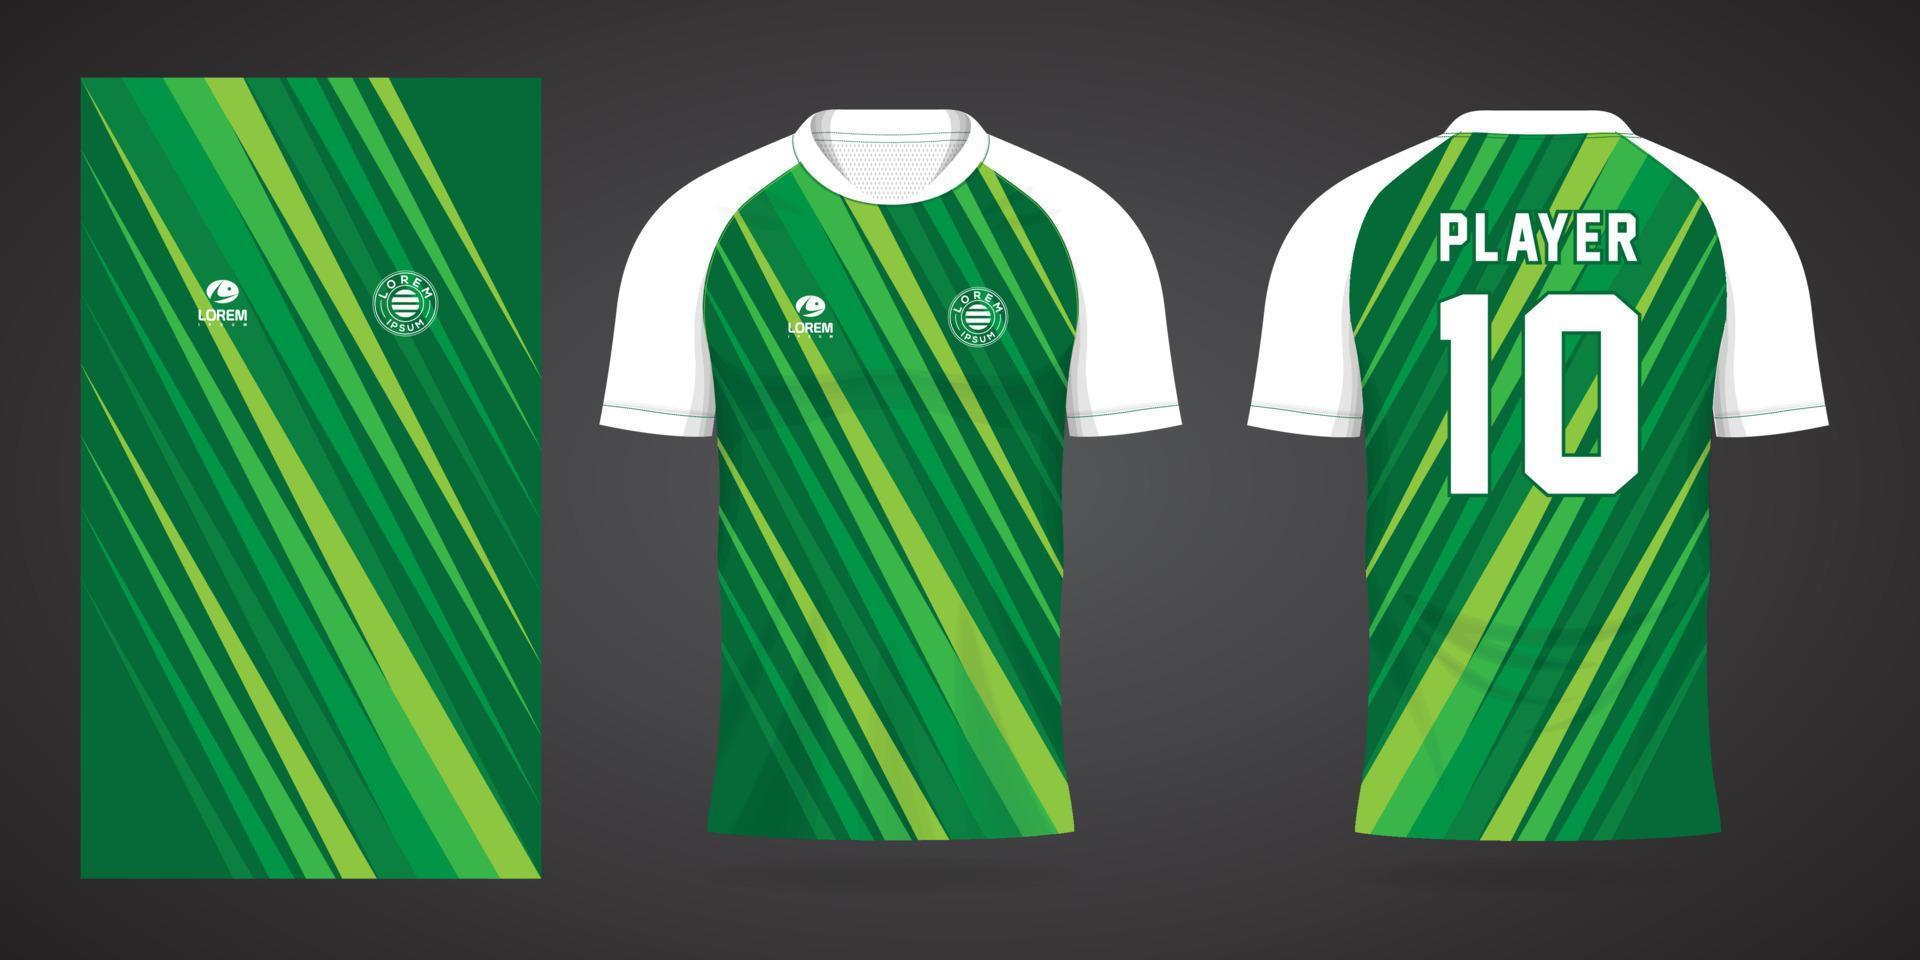 modello di design sportivo maglia da calcio verde vettore